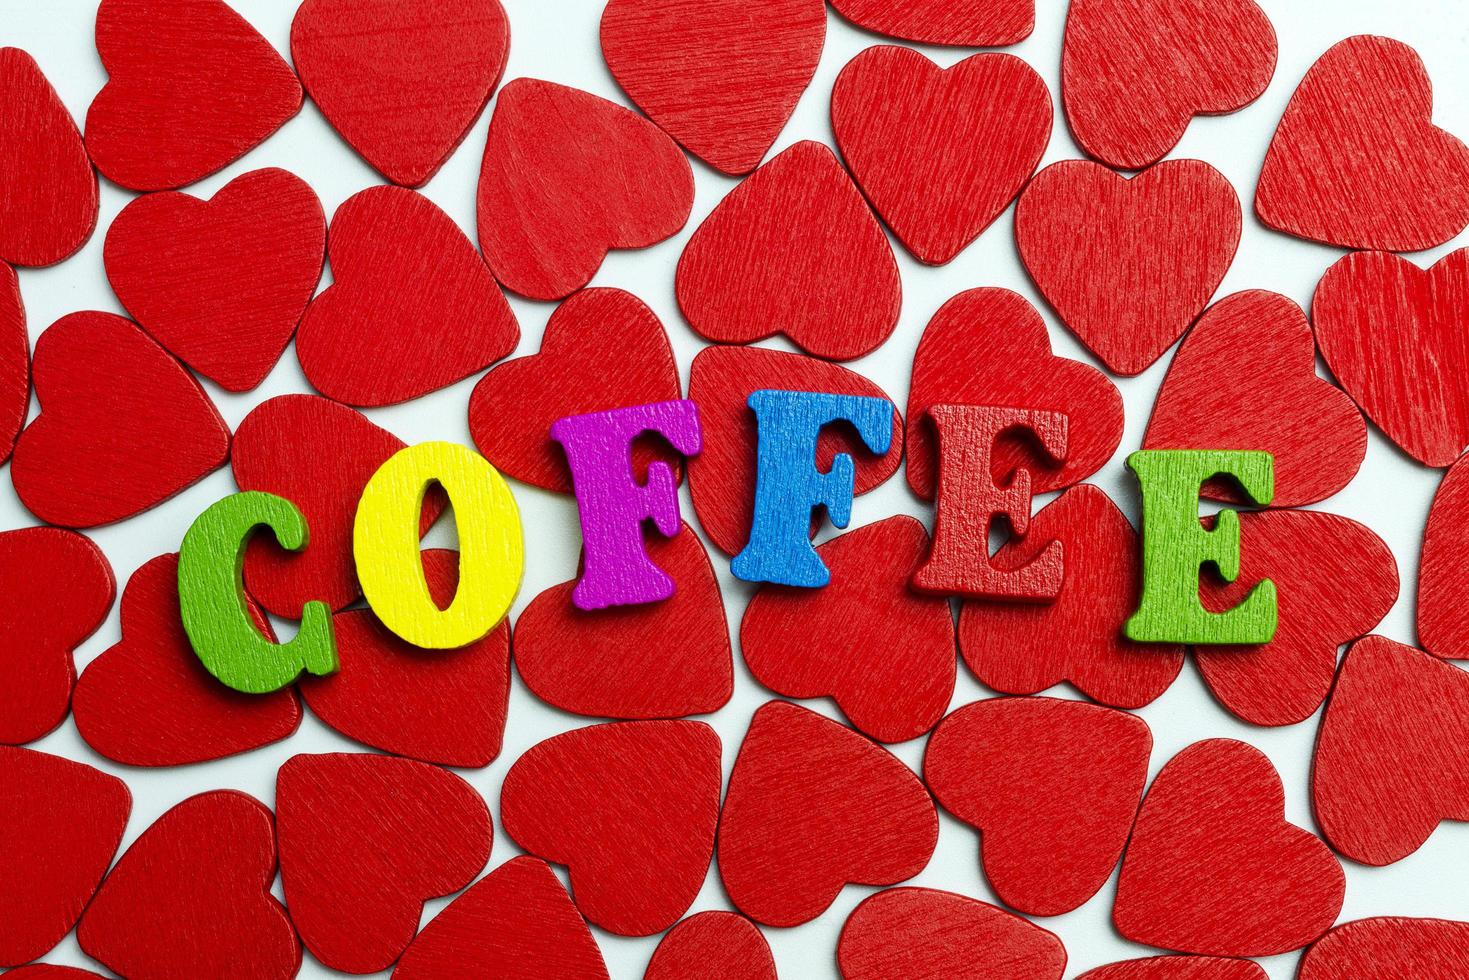 la palabra café está grabada en los corazones. foto